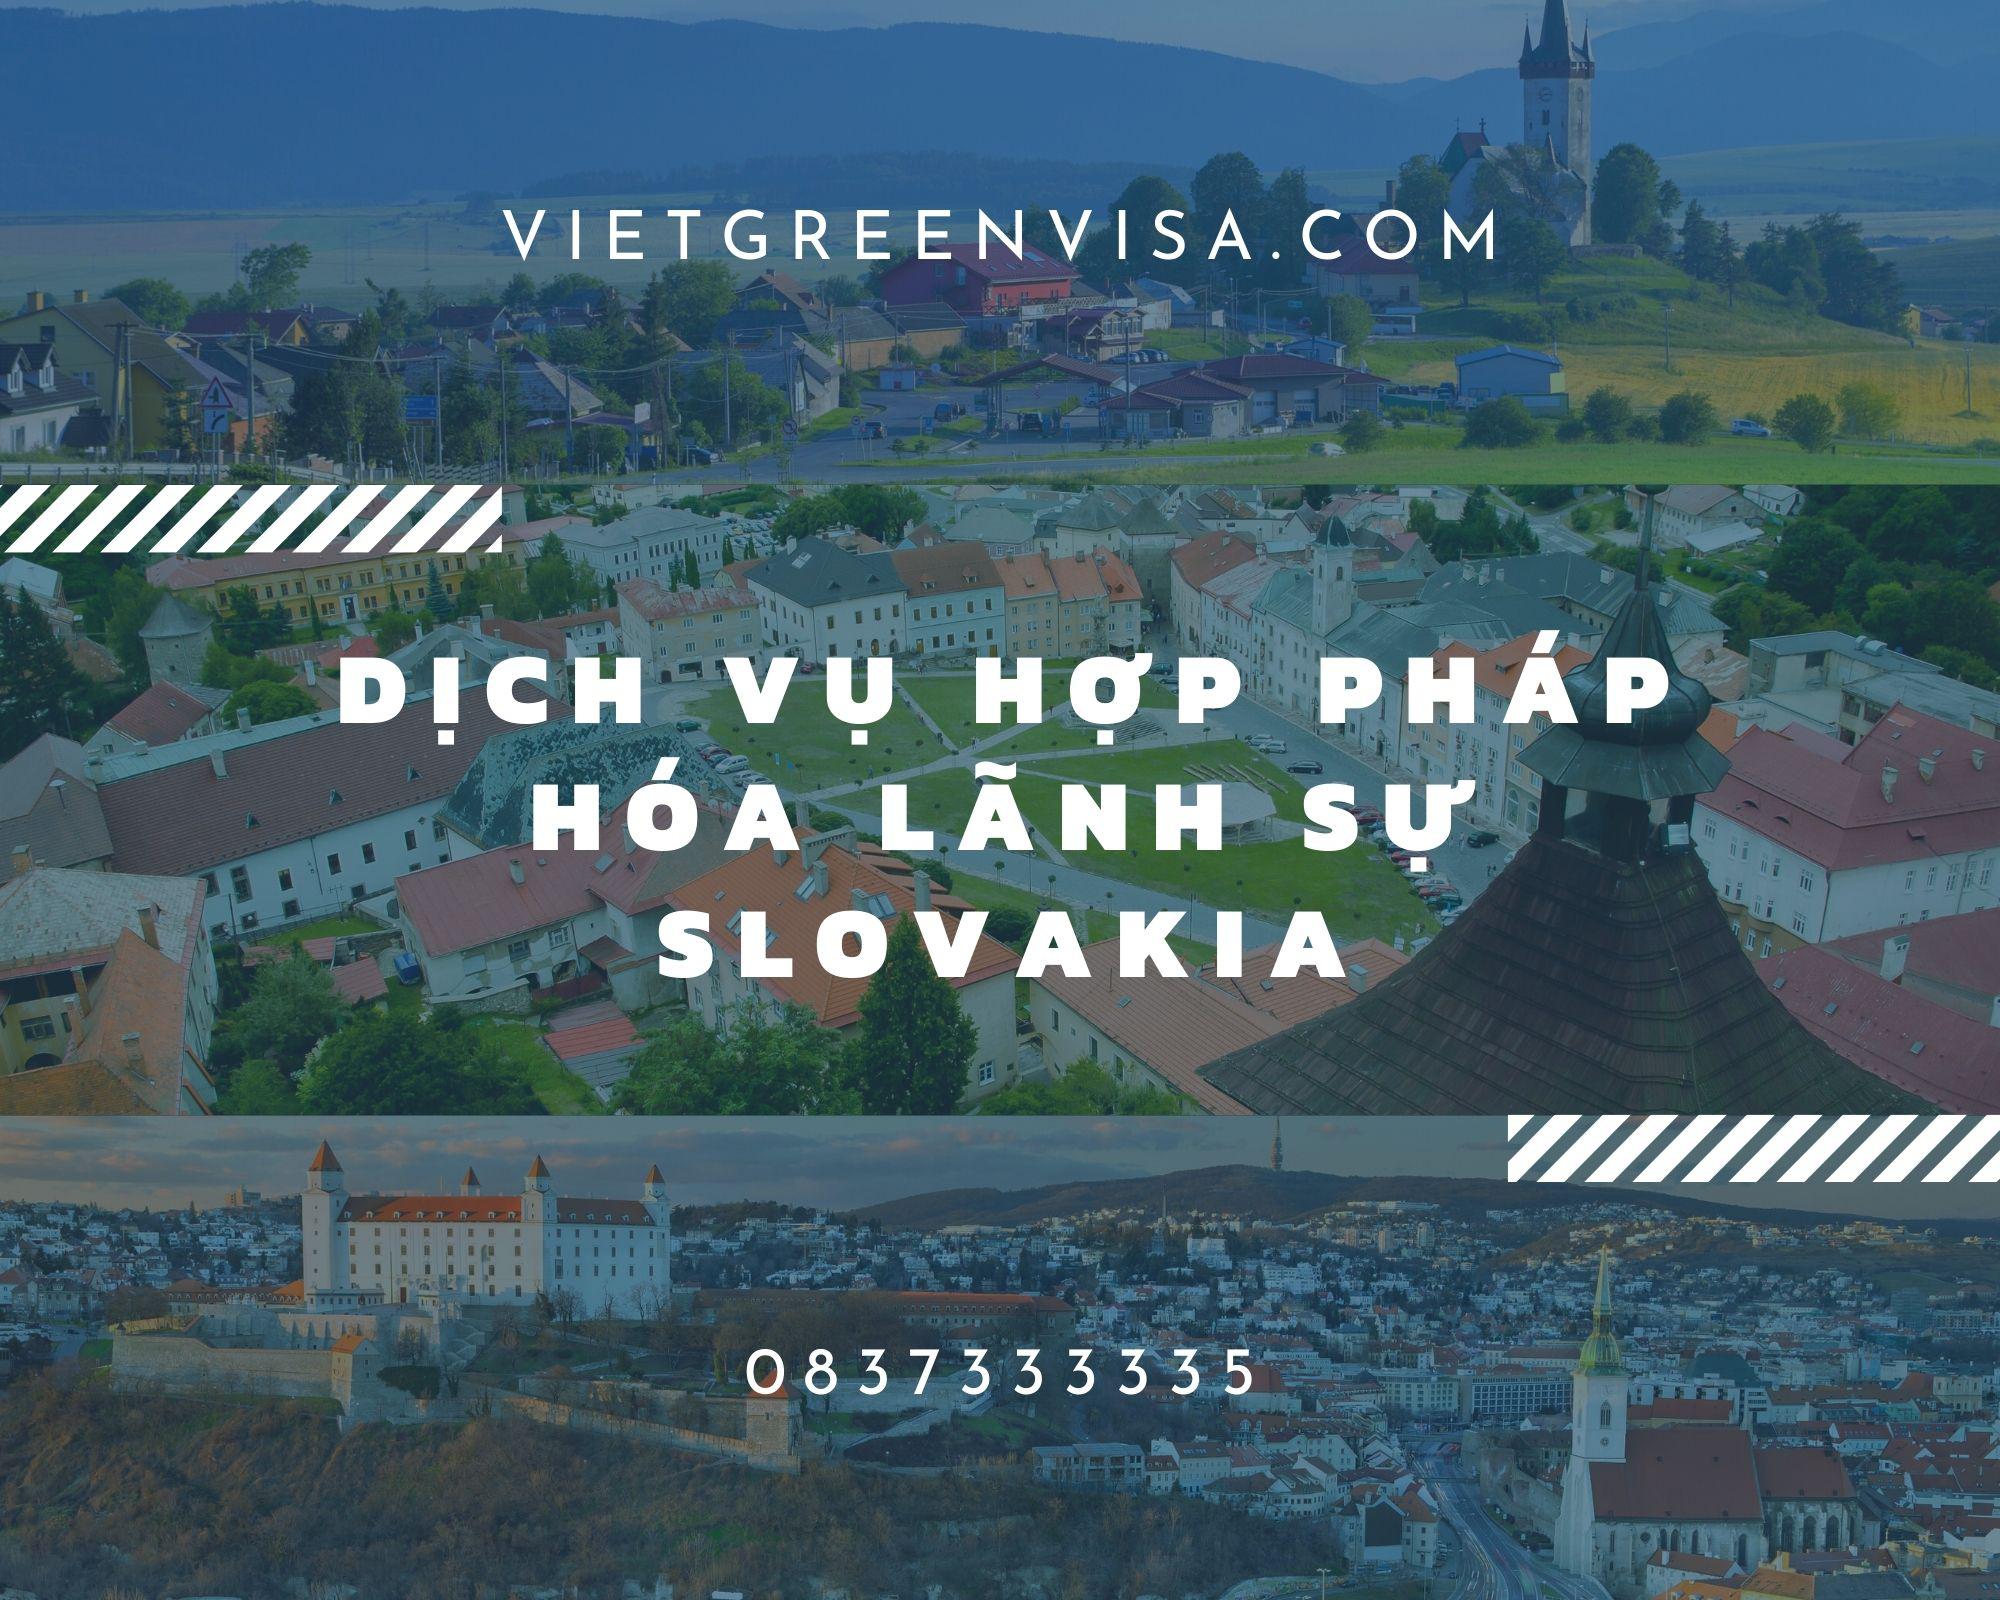  Dịch vụ hợp pháp hóa giấy tờ tại Slovakia nhanh chóng